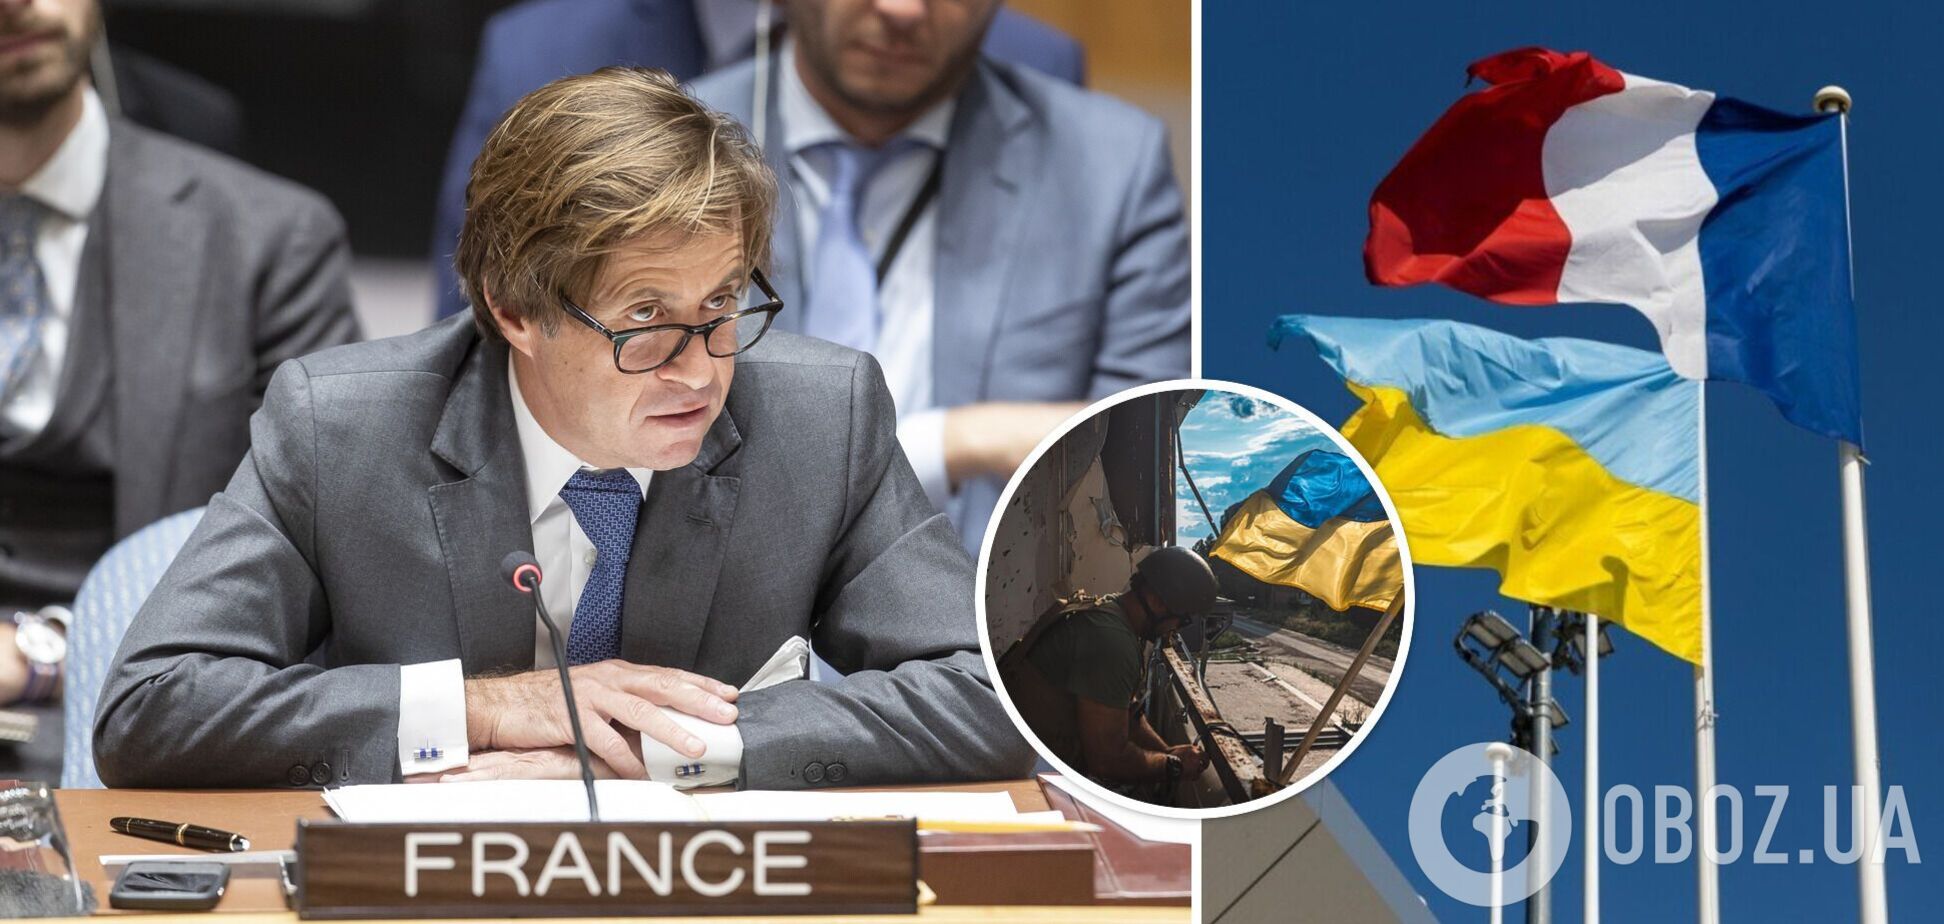 Украина склоняет к своему видению мира все больше стран, – представитель Франции в ООН